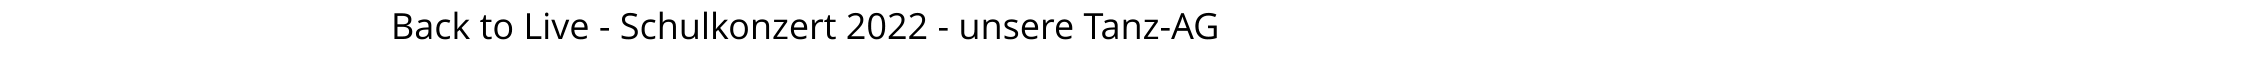 Back to Live - Schulkonzert 2022 - unsere Tanz-AG